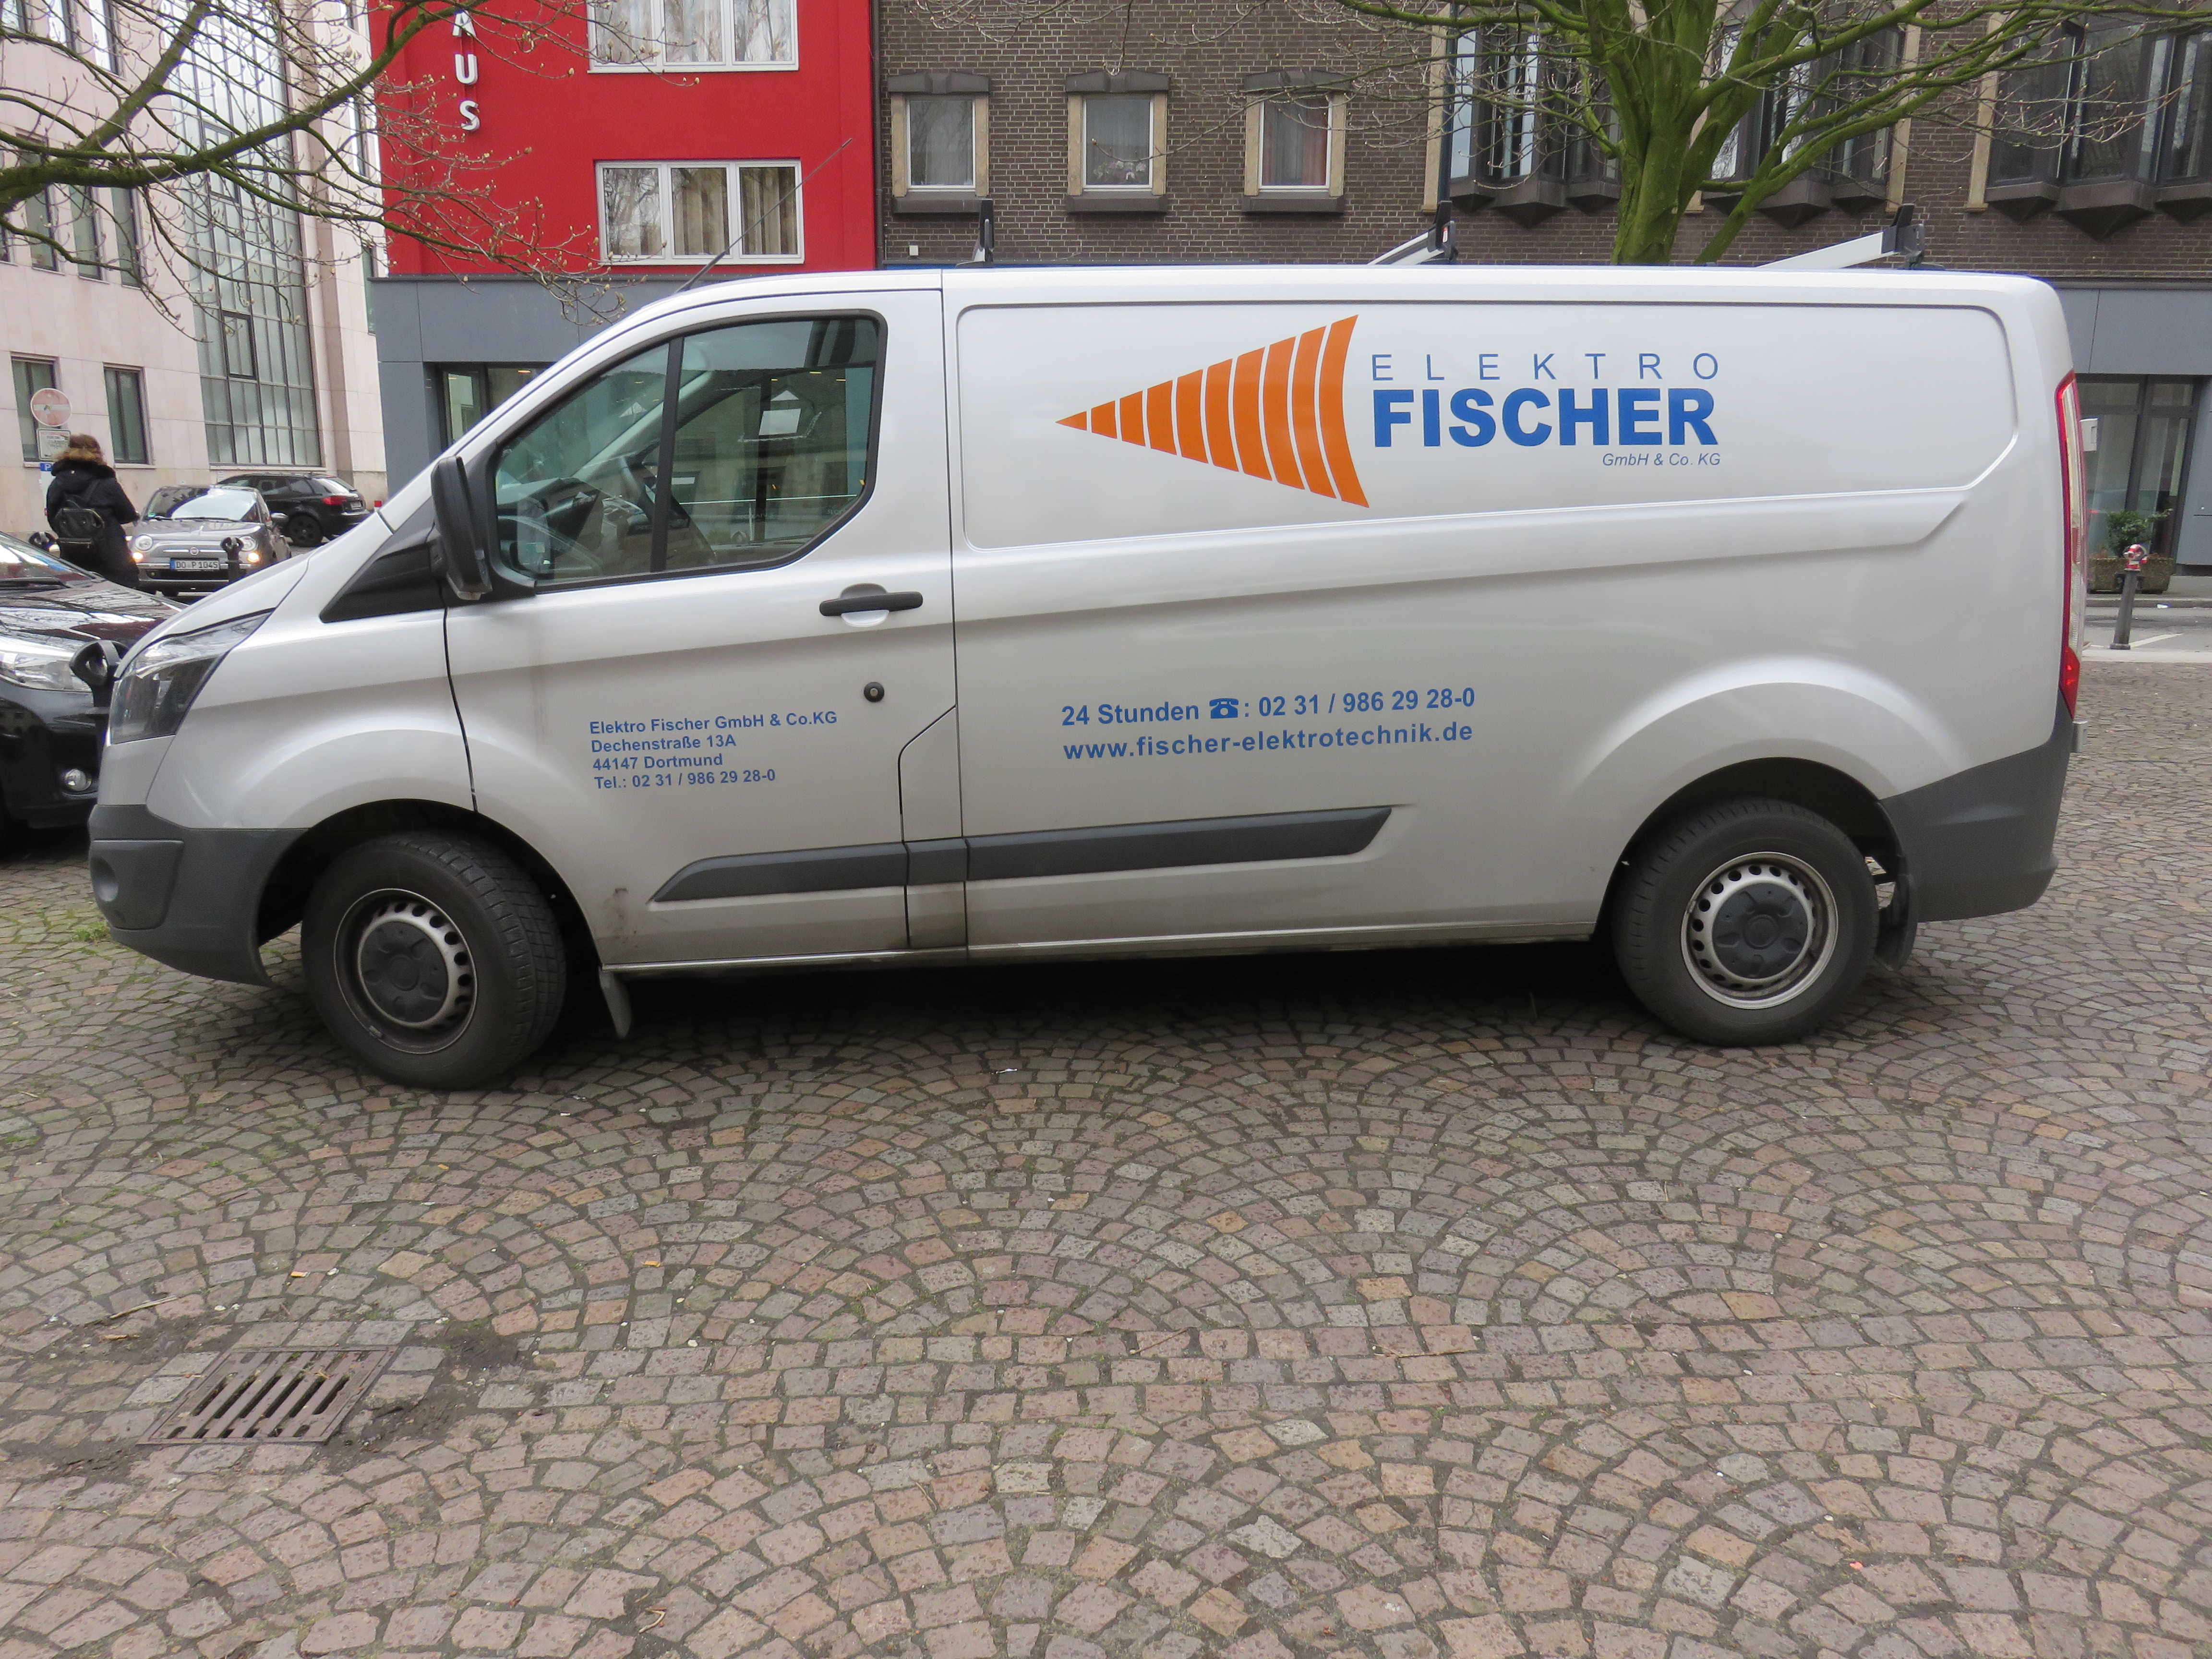 ➤ Elektro Fischer GmbH & Co. KG 44147 Dortmund-Mitte Öffnungszeiten | Adresse | Telefon 0